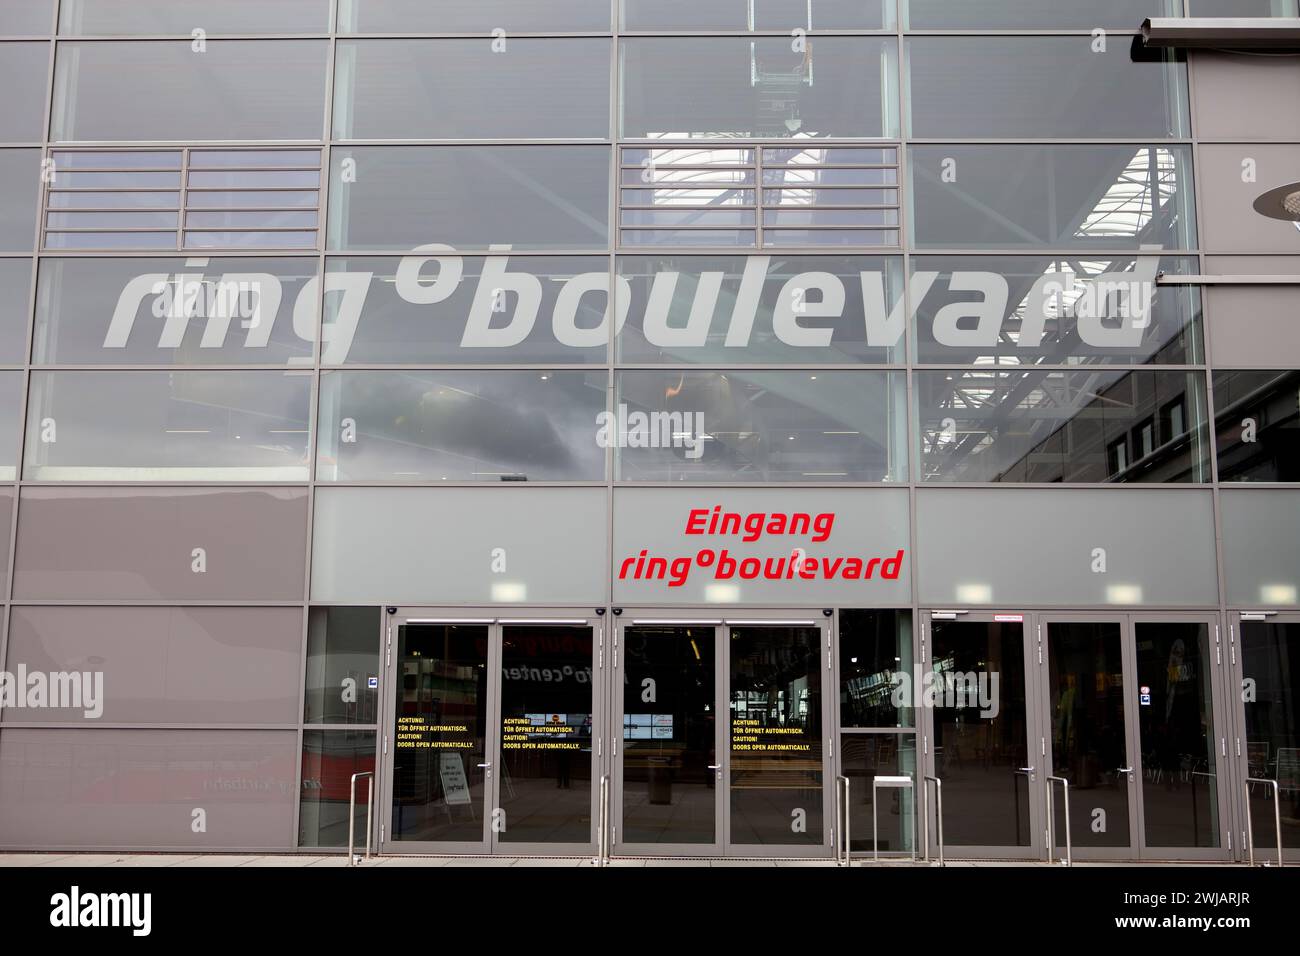 Projet de bâtiments Nürburgring 2009, hippodrome de Nürburgring, Nürburg, Rhénanie-Palatinat, Allemagne, Europe, 2012 Banque D'Images